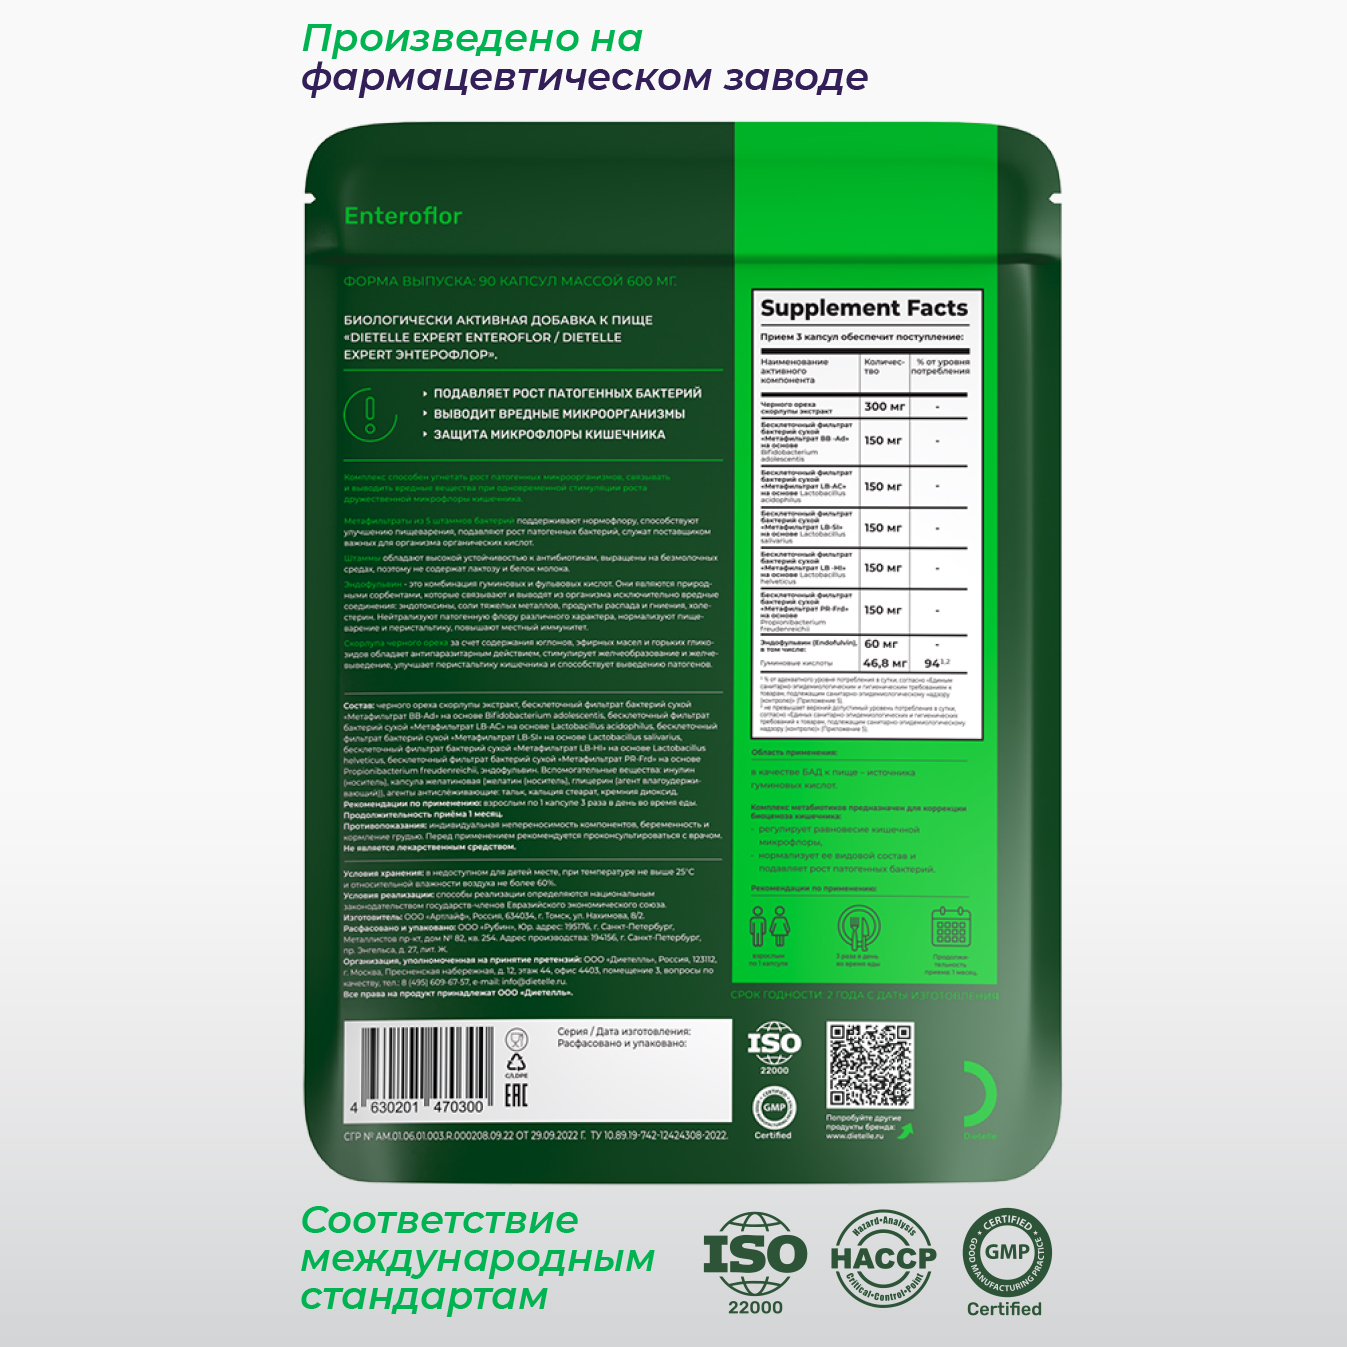 Энтерофлор 600 мг 90 капс Dietelle метабиотик и сорбент для микрофлоры кишечника и здоровья ЖКТ - фото 2